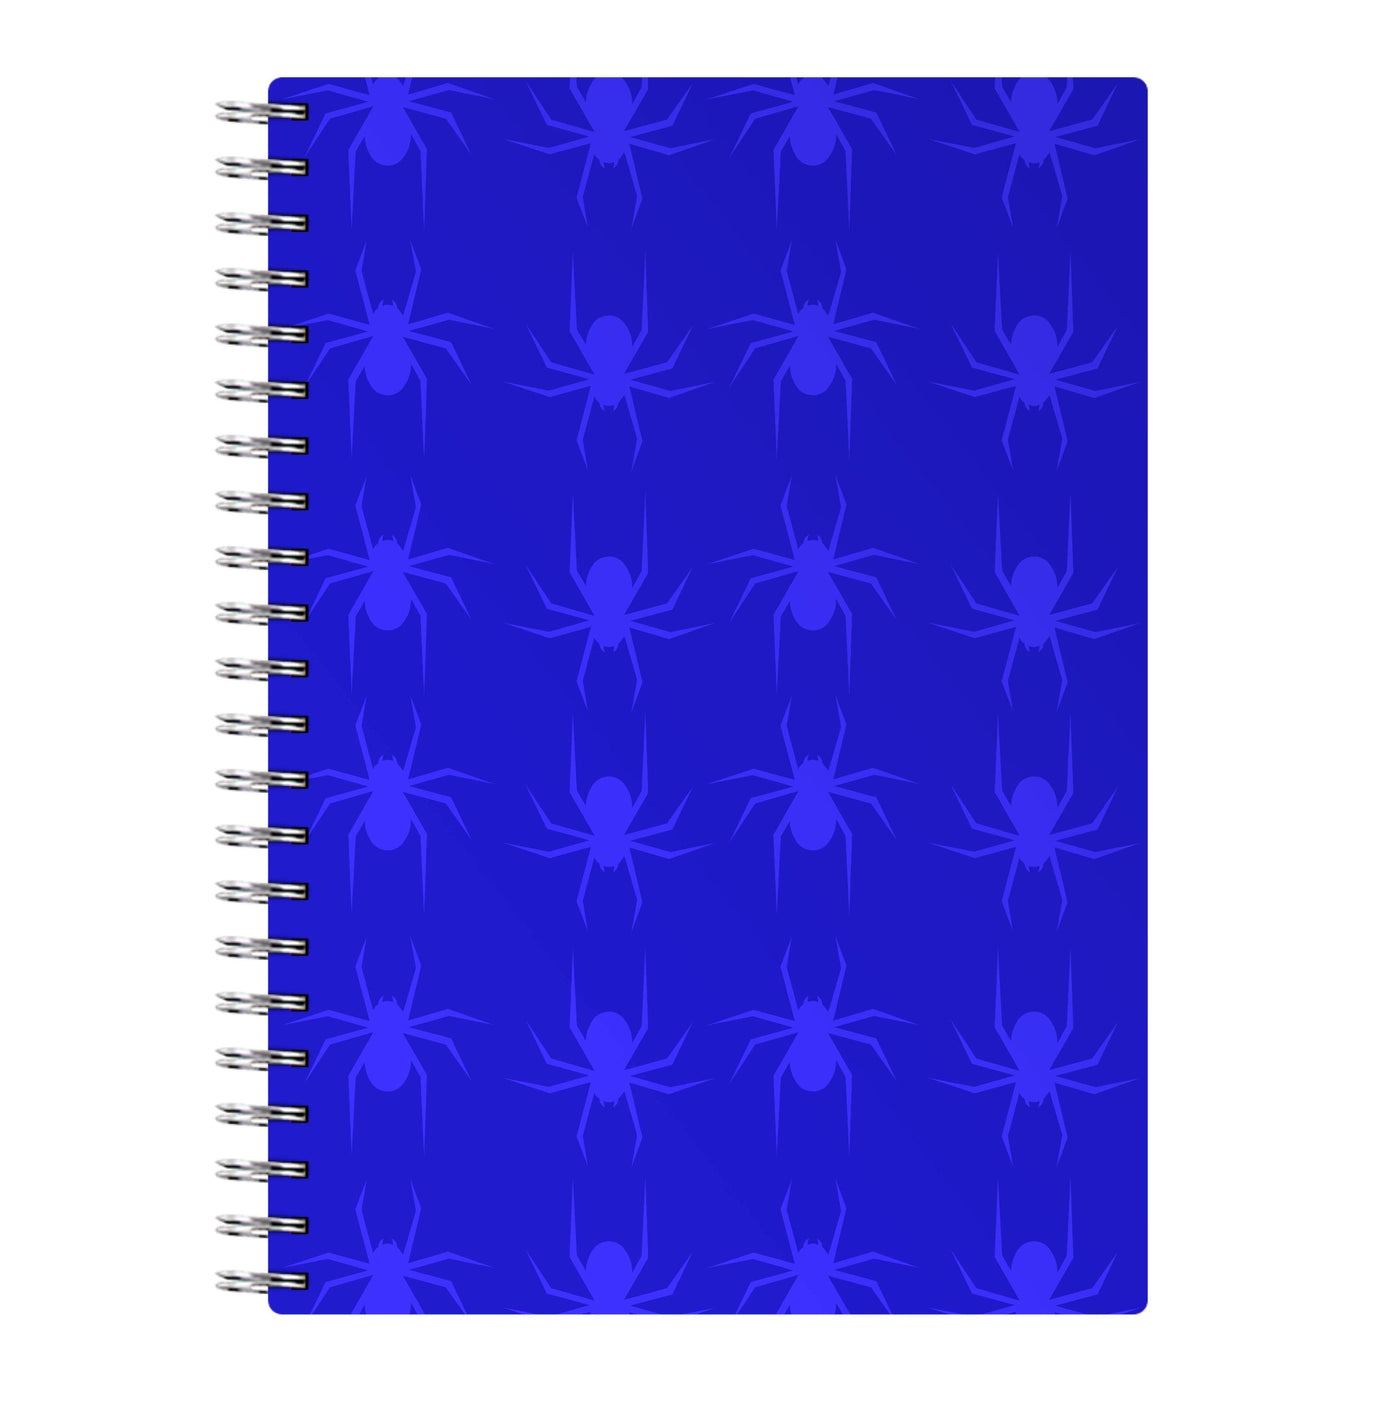 Spider Pattern - Halloween Notebook